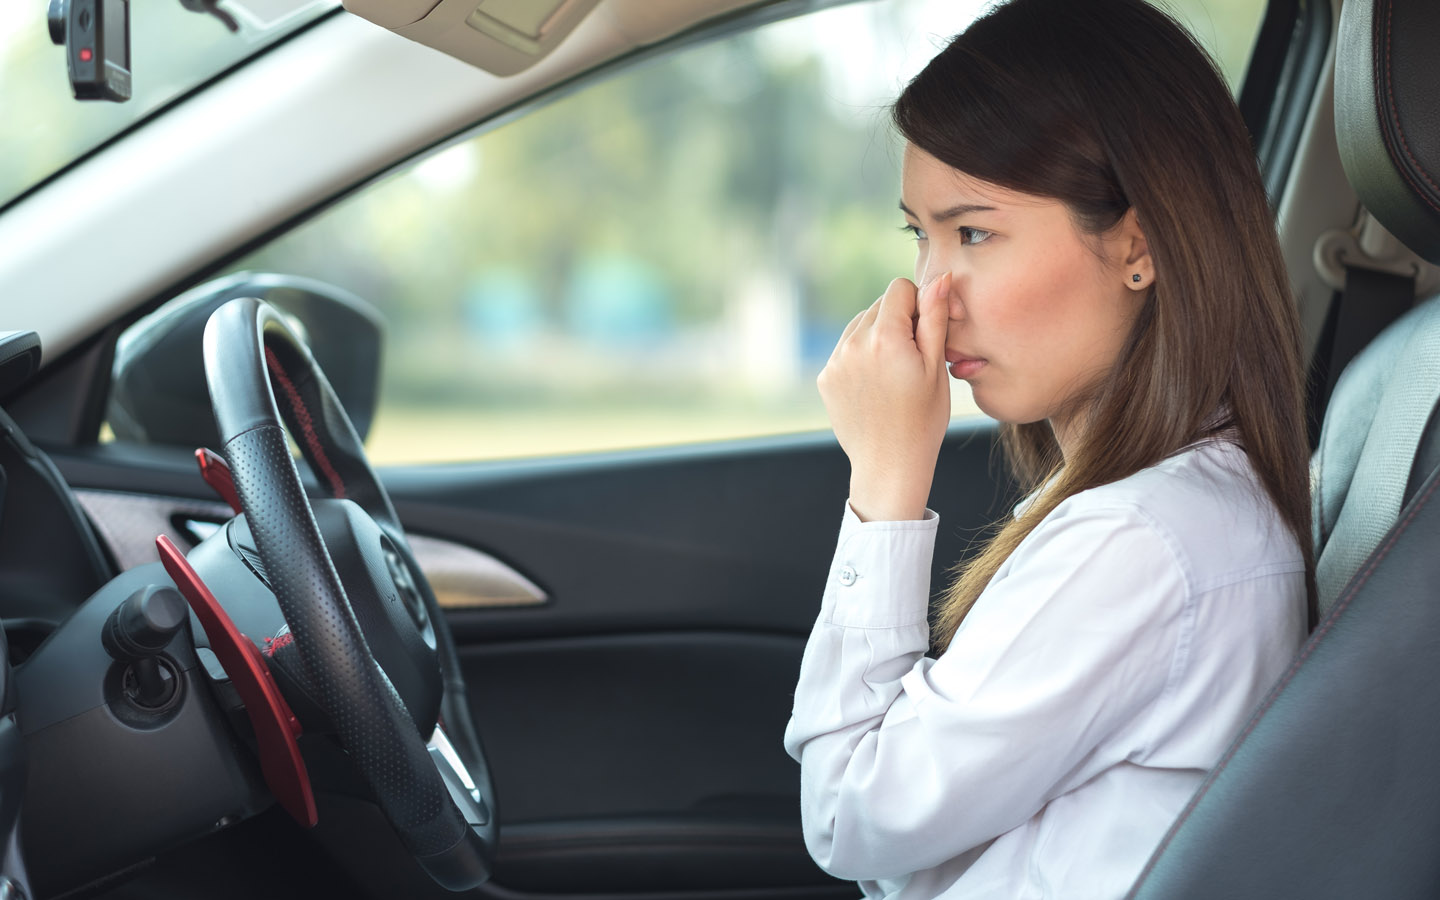 Запах гари из автомобиля — признак того, что вашему автомобилю требуется промывка тормозной жидкости